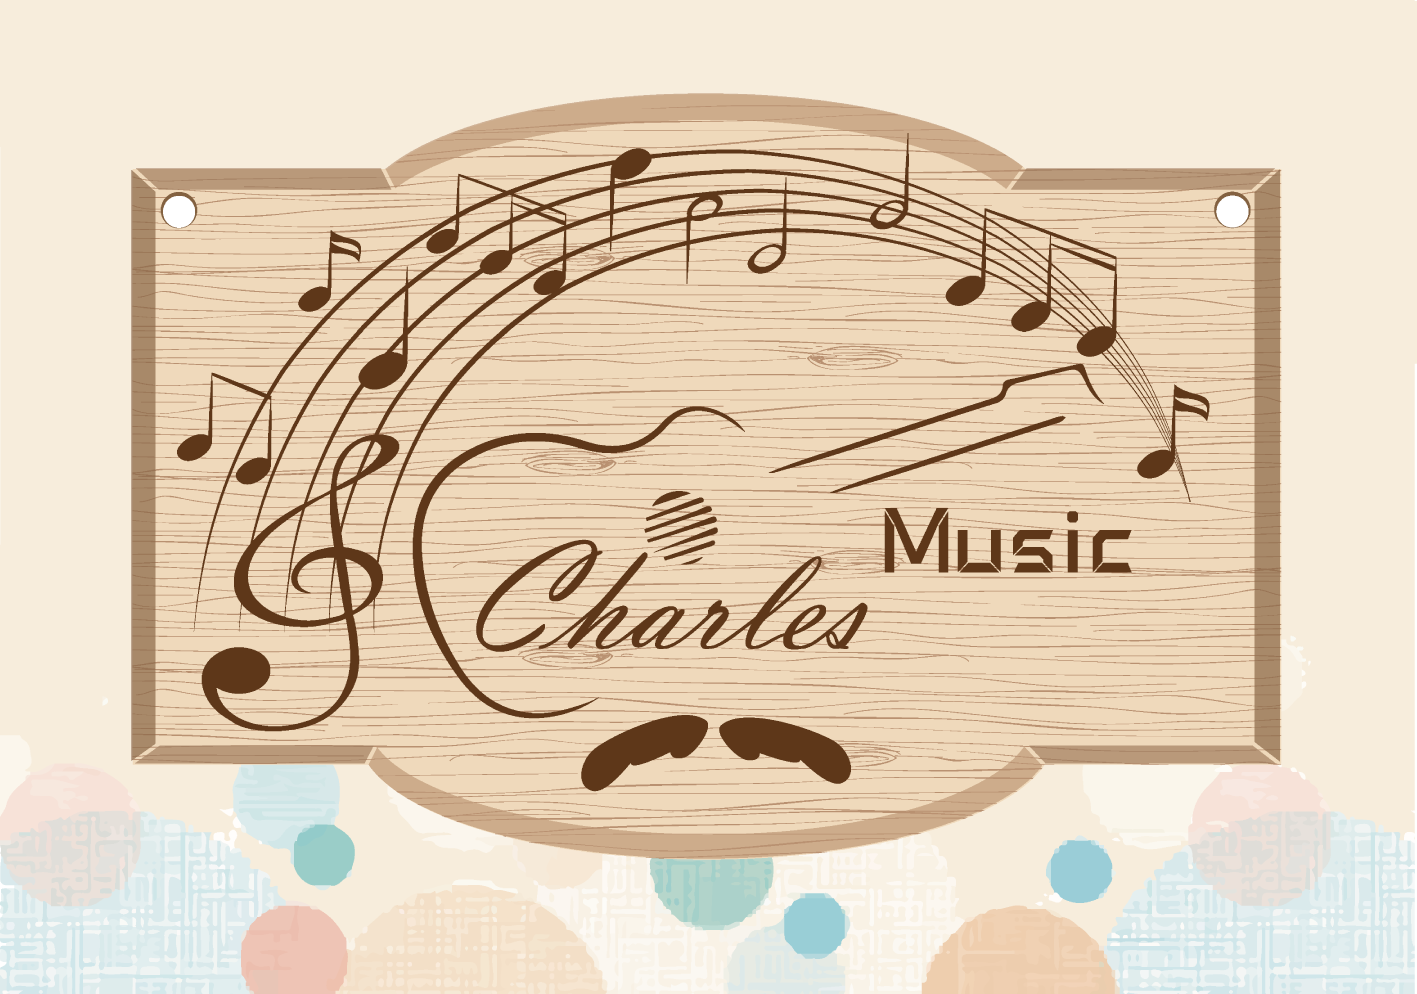 Charles's Music